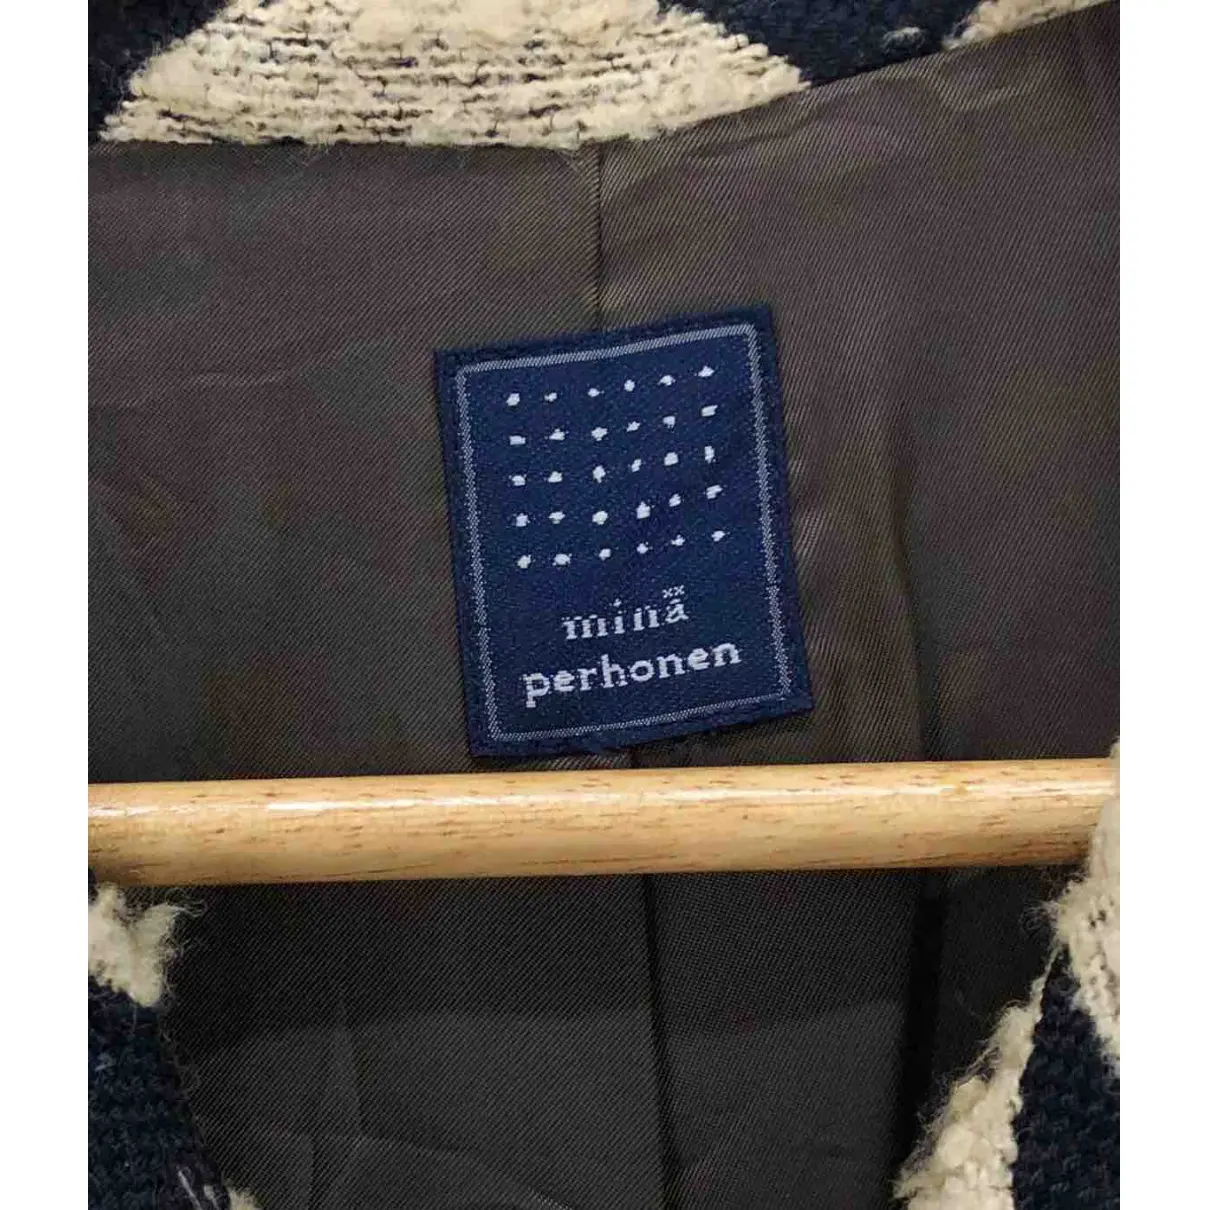 Wool coat Mina Perhonen - Vintage